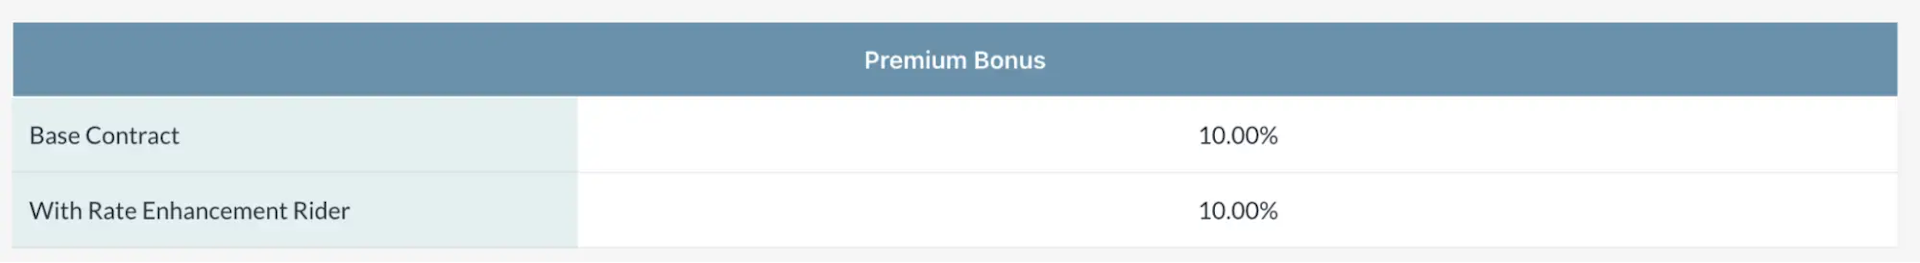 premium bonus 